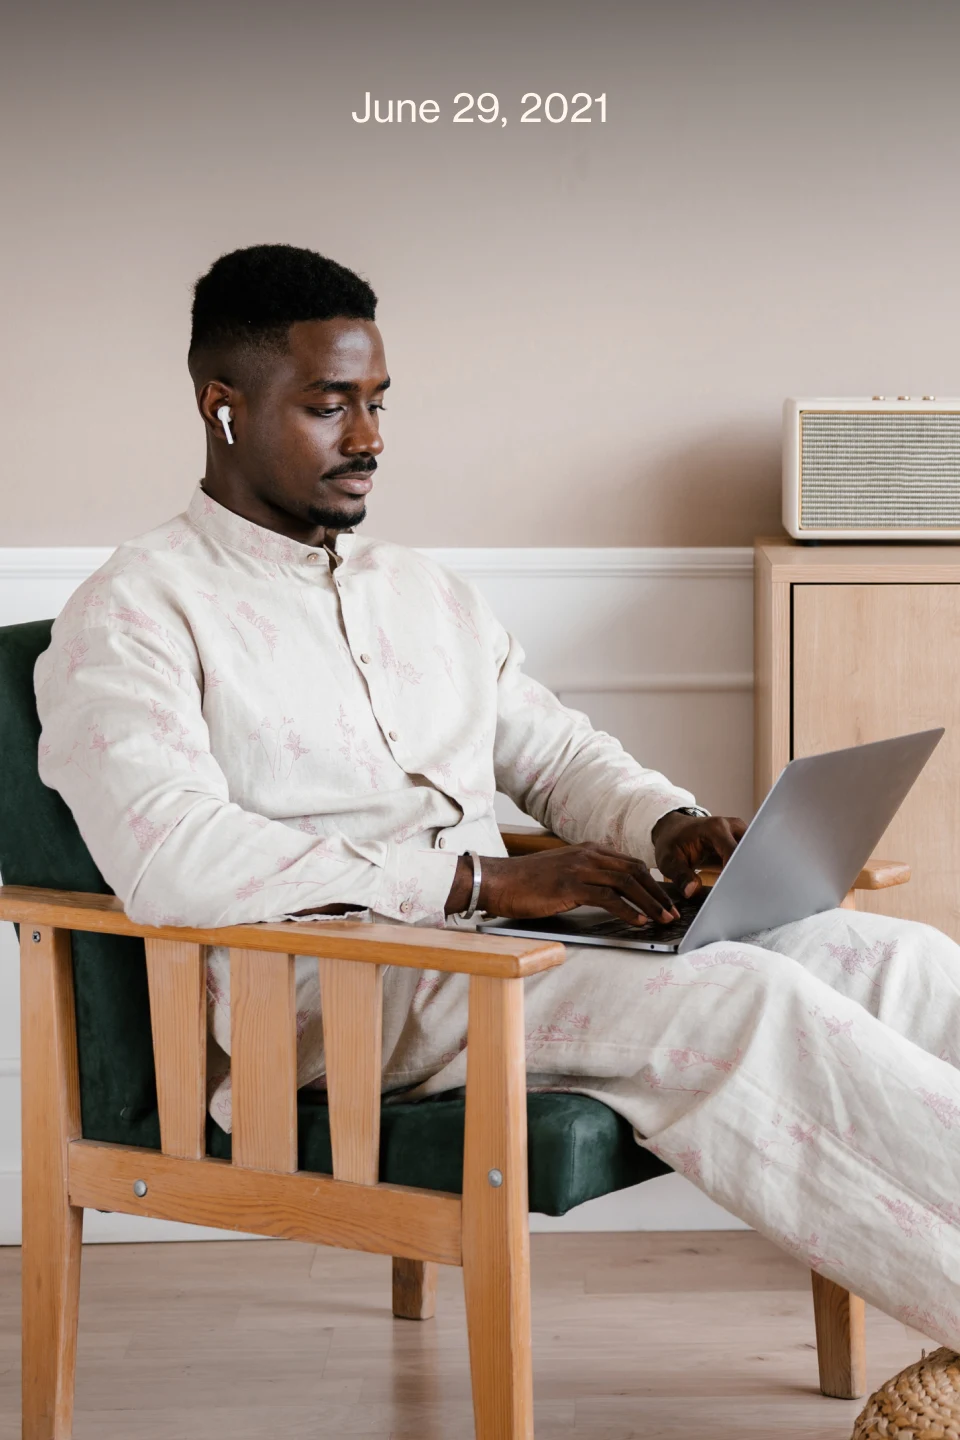 Homem negro vestindo camisa e calça bege e usando fones de ouvido, sentado em uma cadeira e digitando no computador.